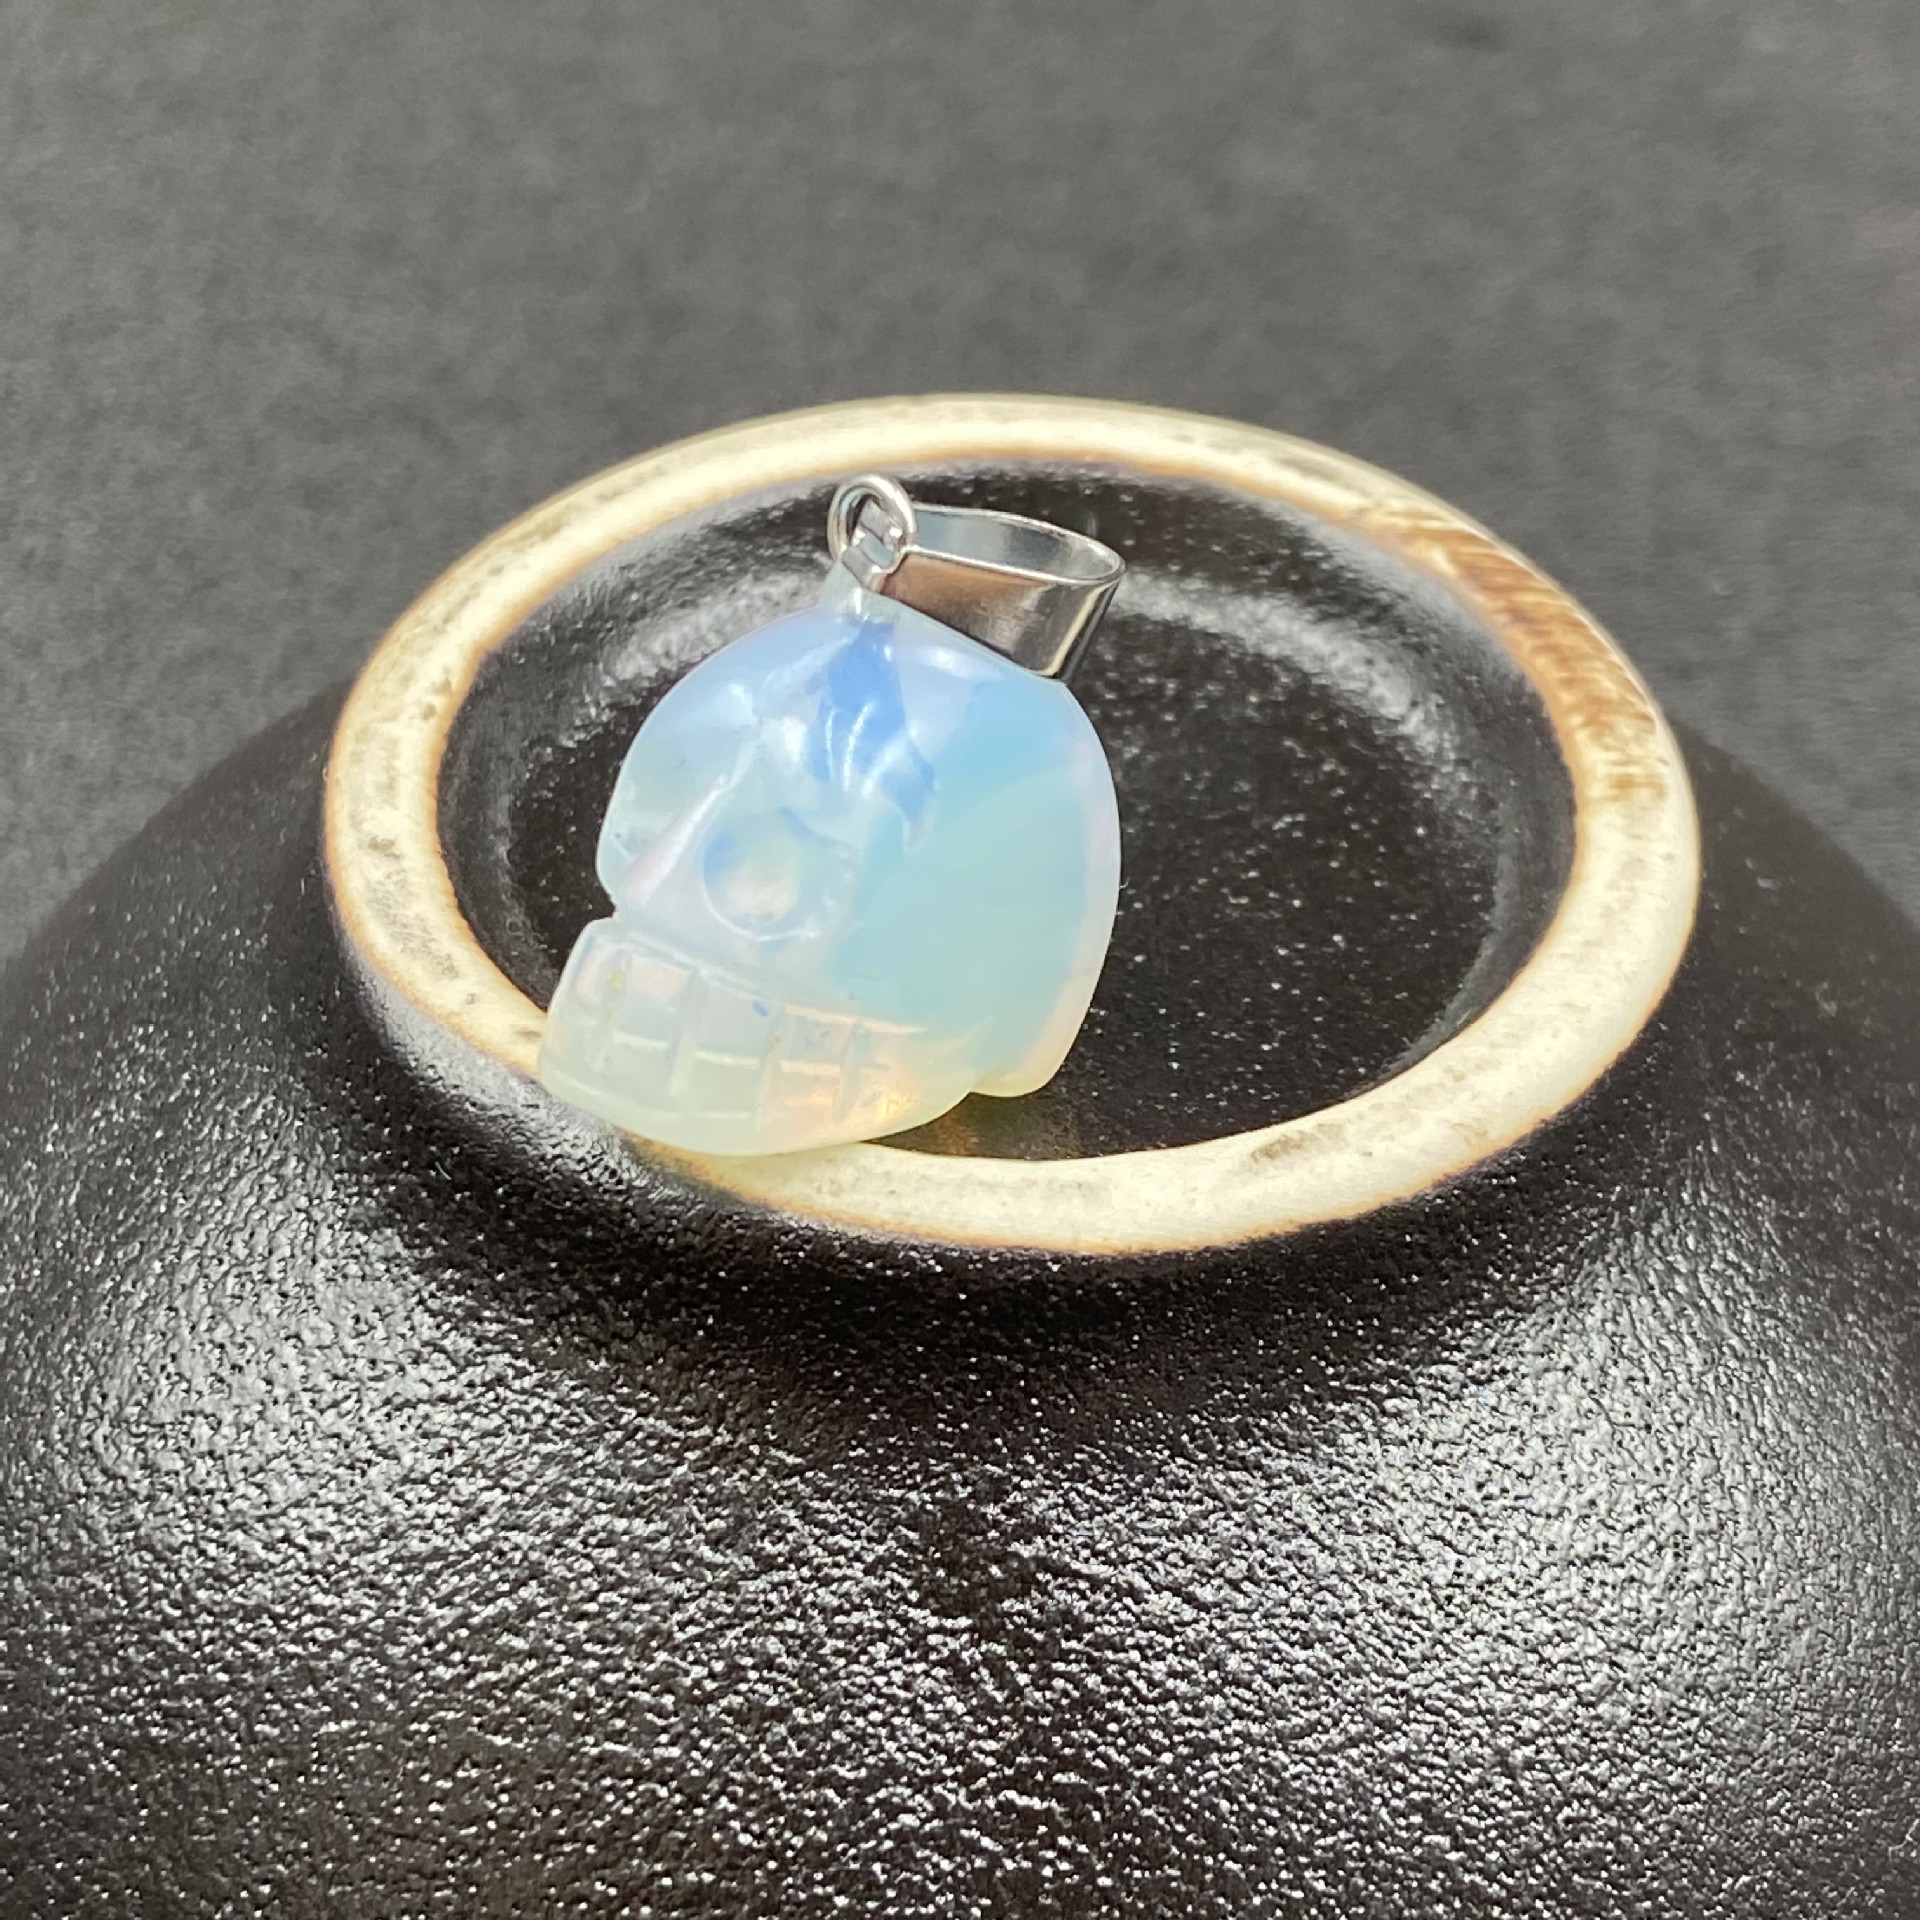 3:More opal